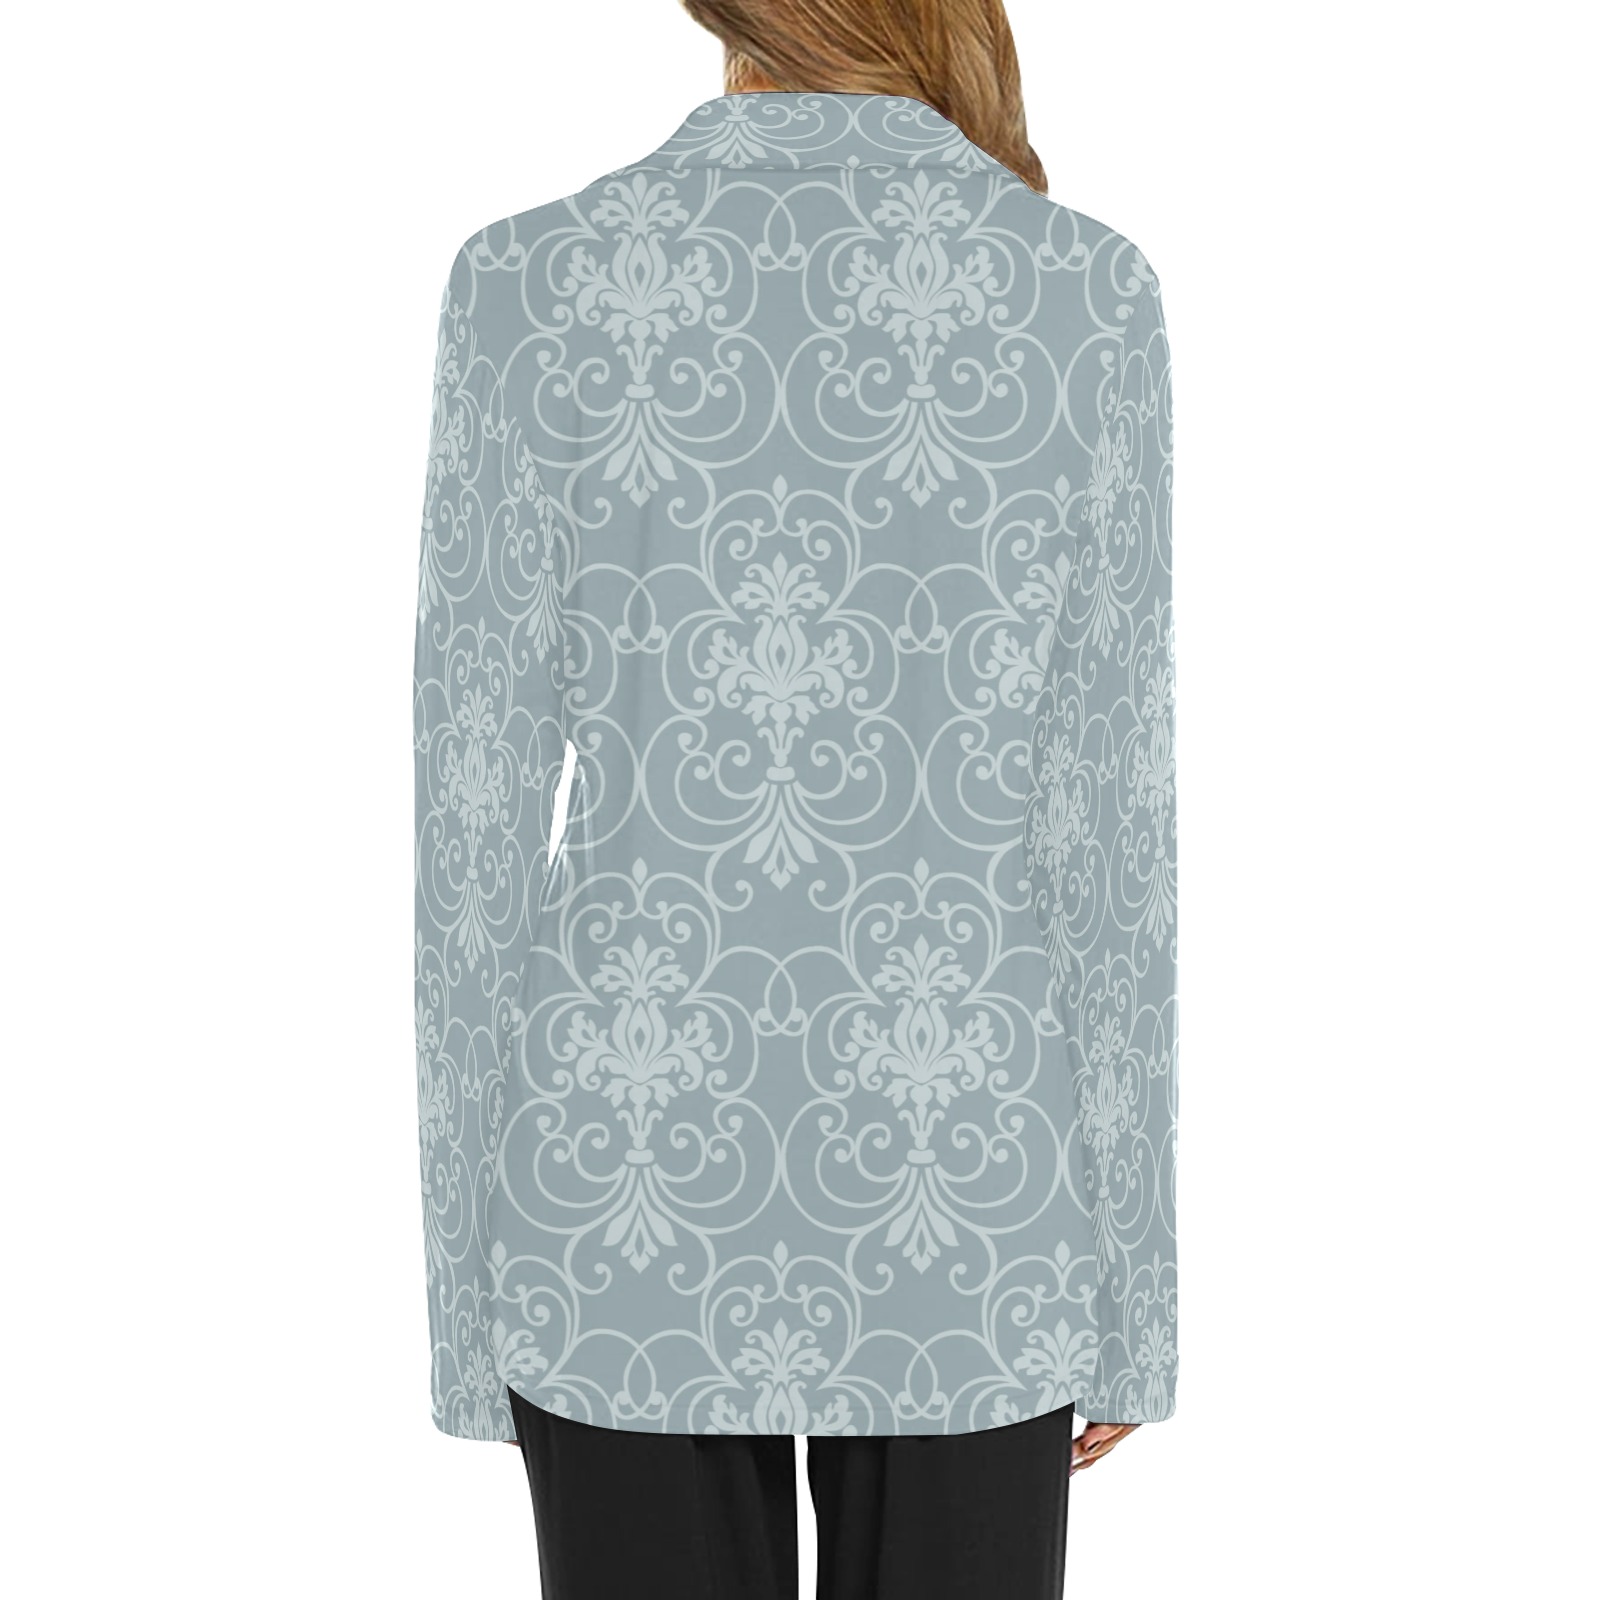 Elegant stylish baroque style vines illustration on grayish blue background Women's Long Sleeve Pajama Shirt